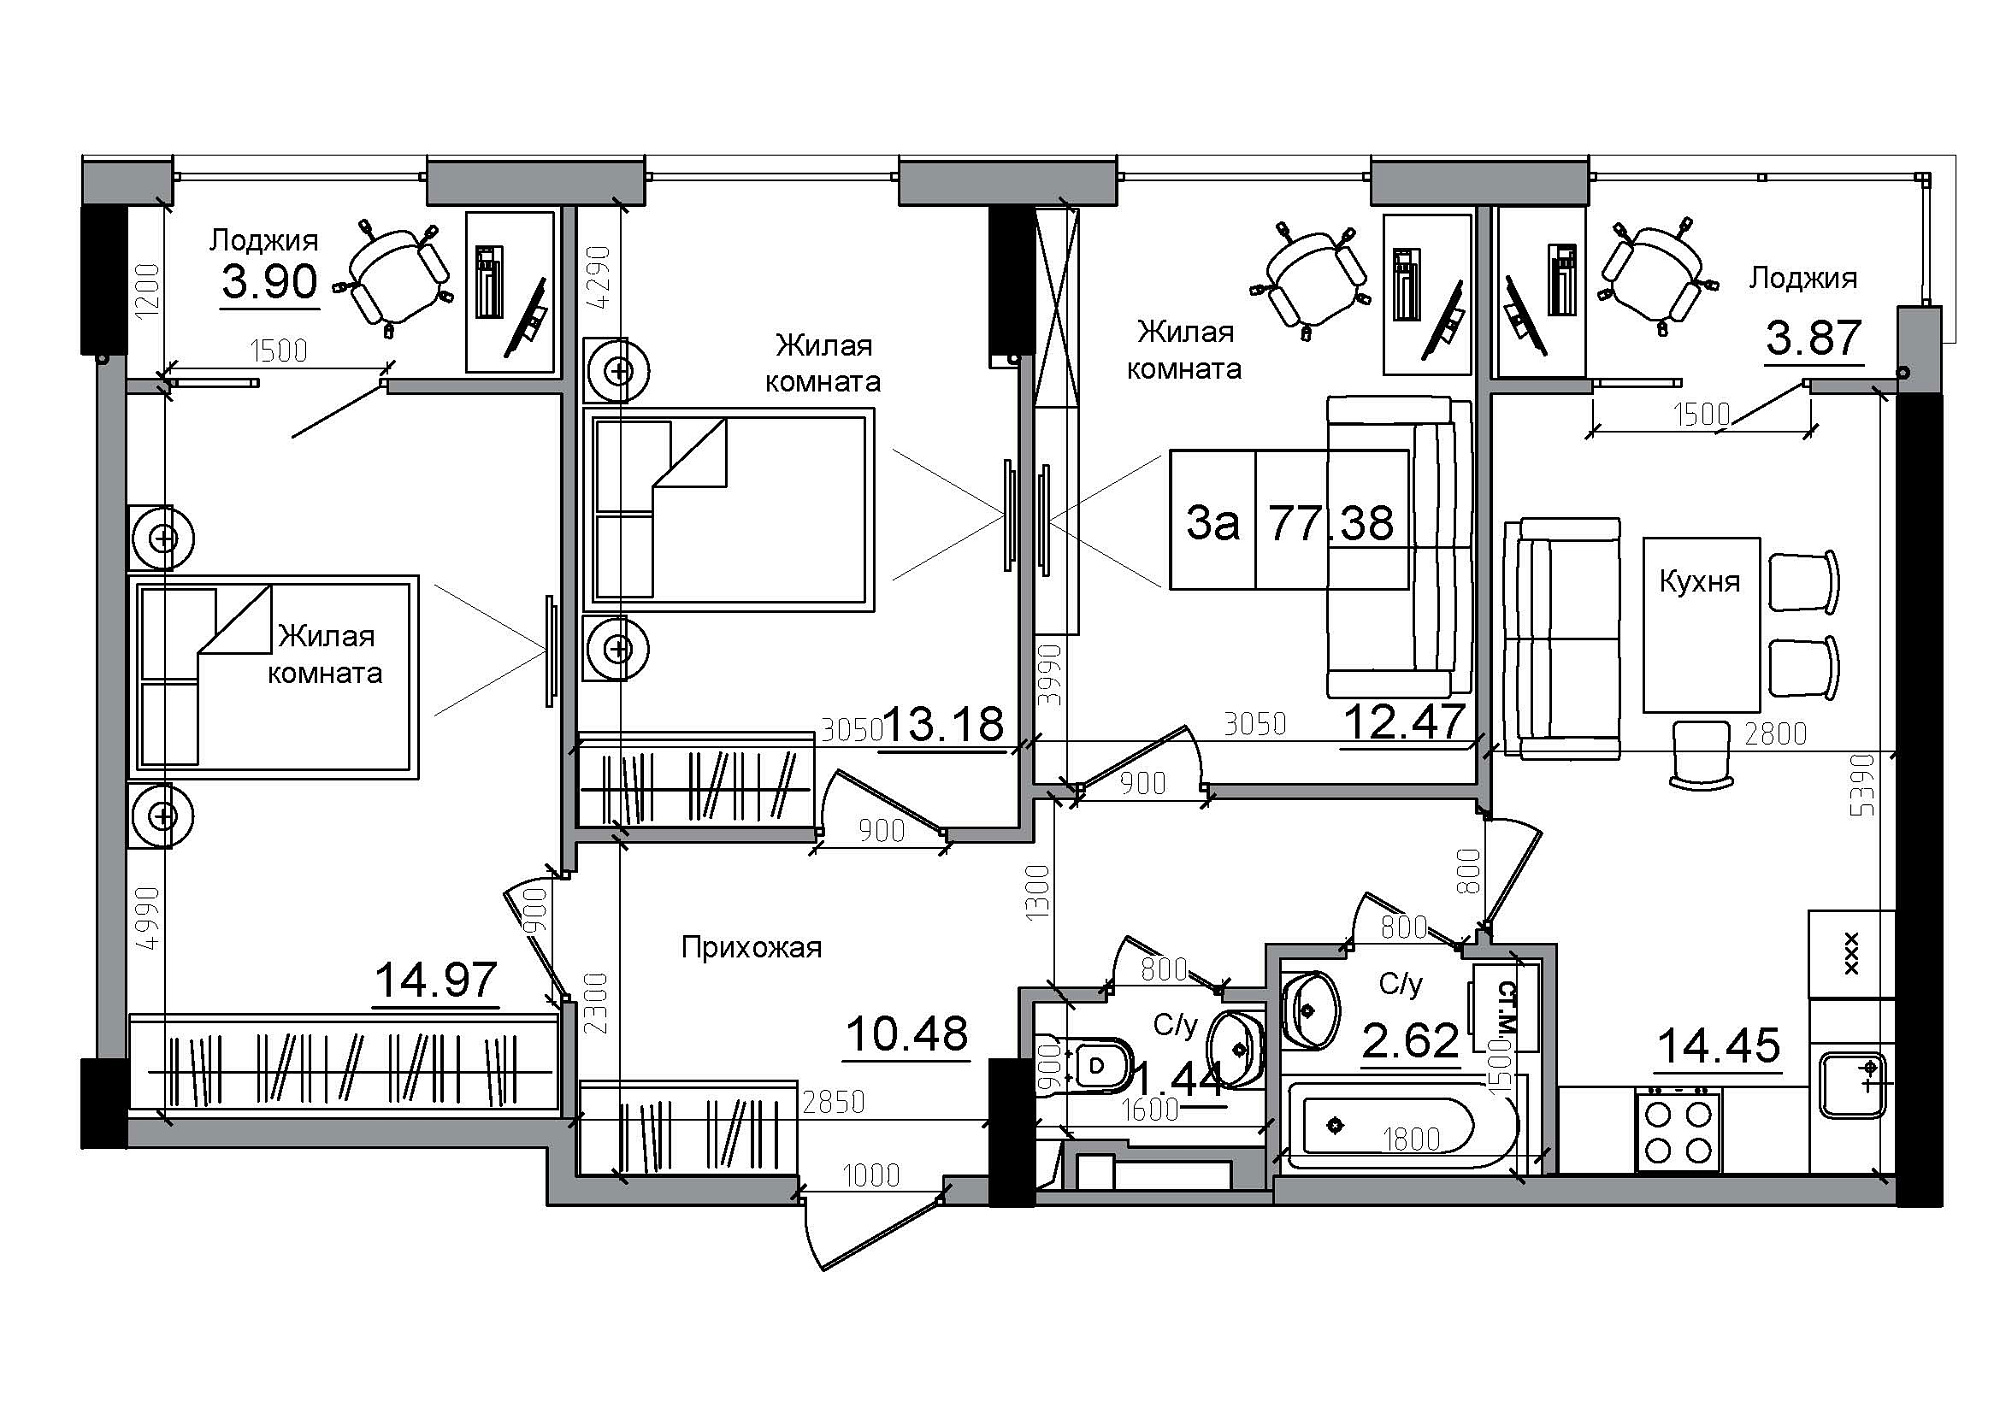 Планировка 3-к квартира площей 77.38м2, AB-12-06/00010.